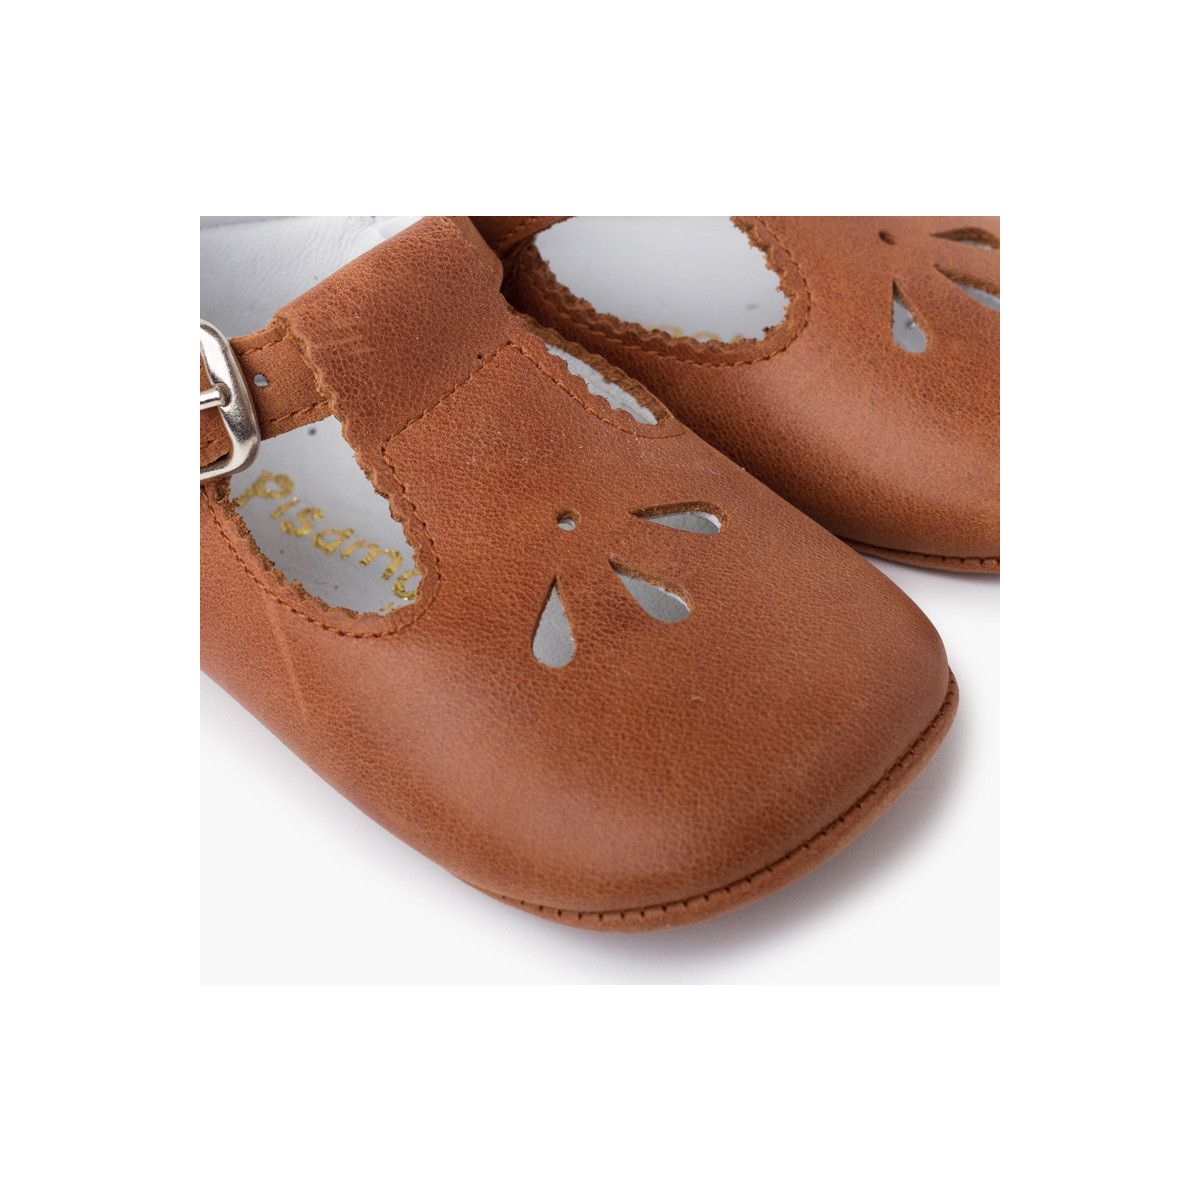 Pisamonas Kaki Chaussures salomé bébé en cuir avec détail perforé oicdVV2U